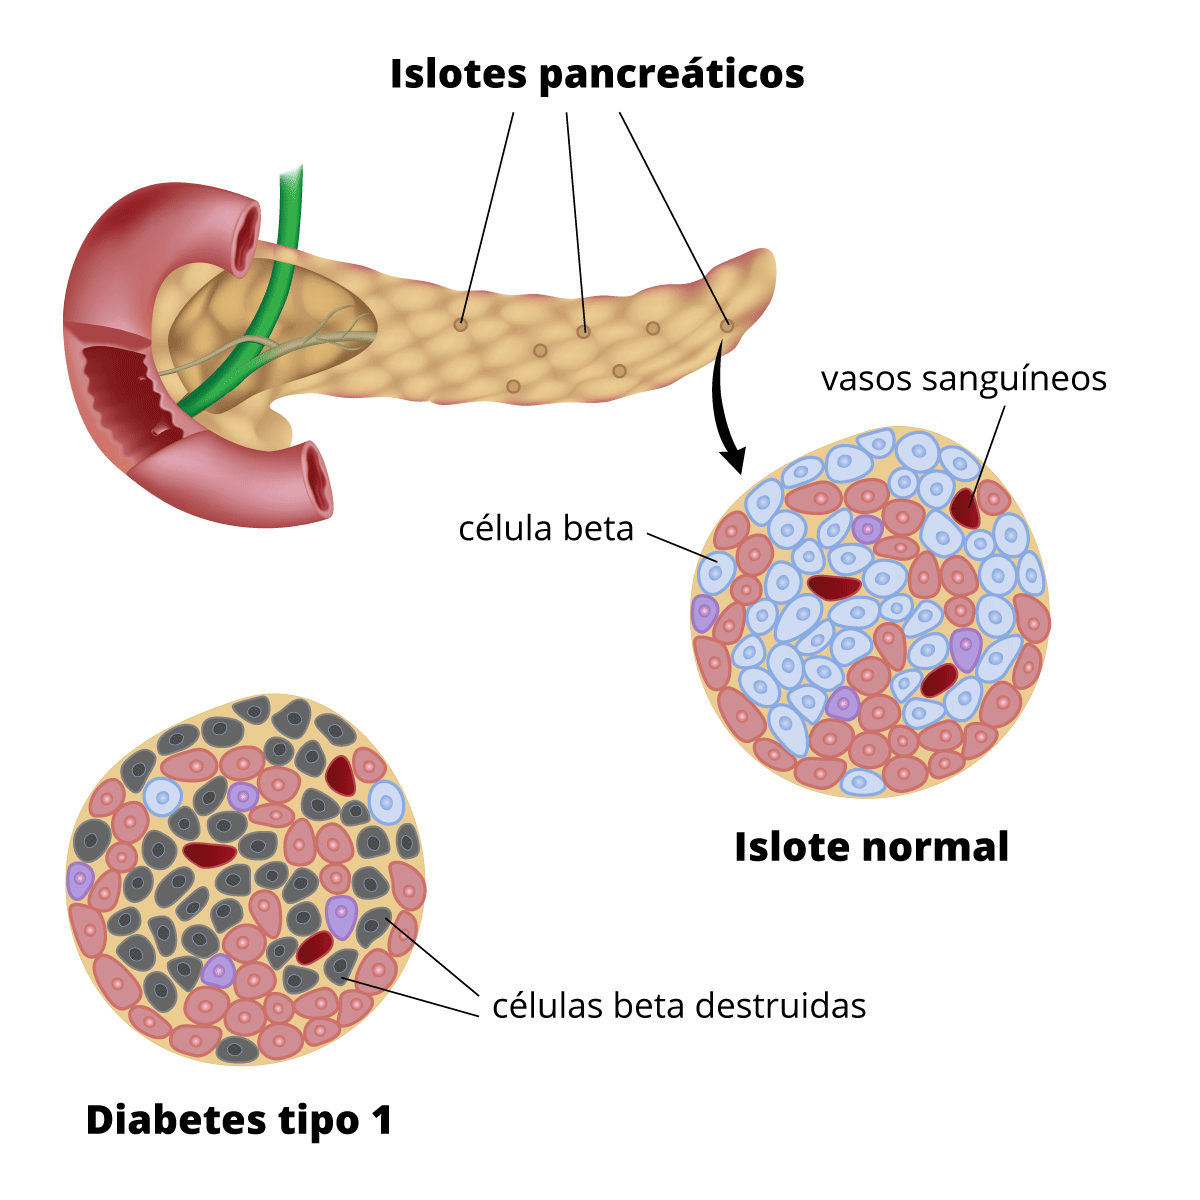 Ilustración del páncreas con insertos que muestra un islote normal, con muchas células beta sanas, y un islote de una persona con diabetes tipo 1, con muchas células beta destruidas.